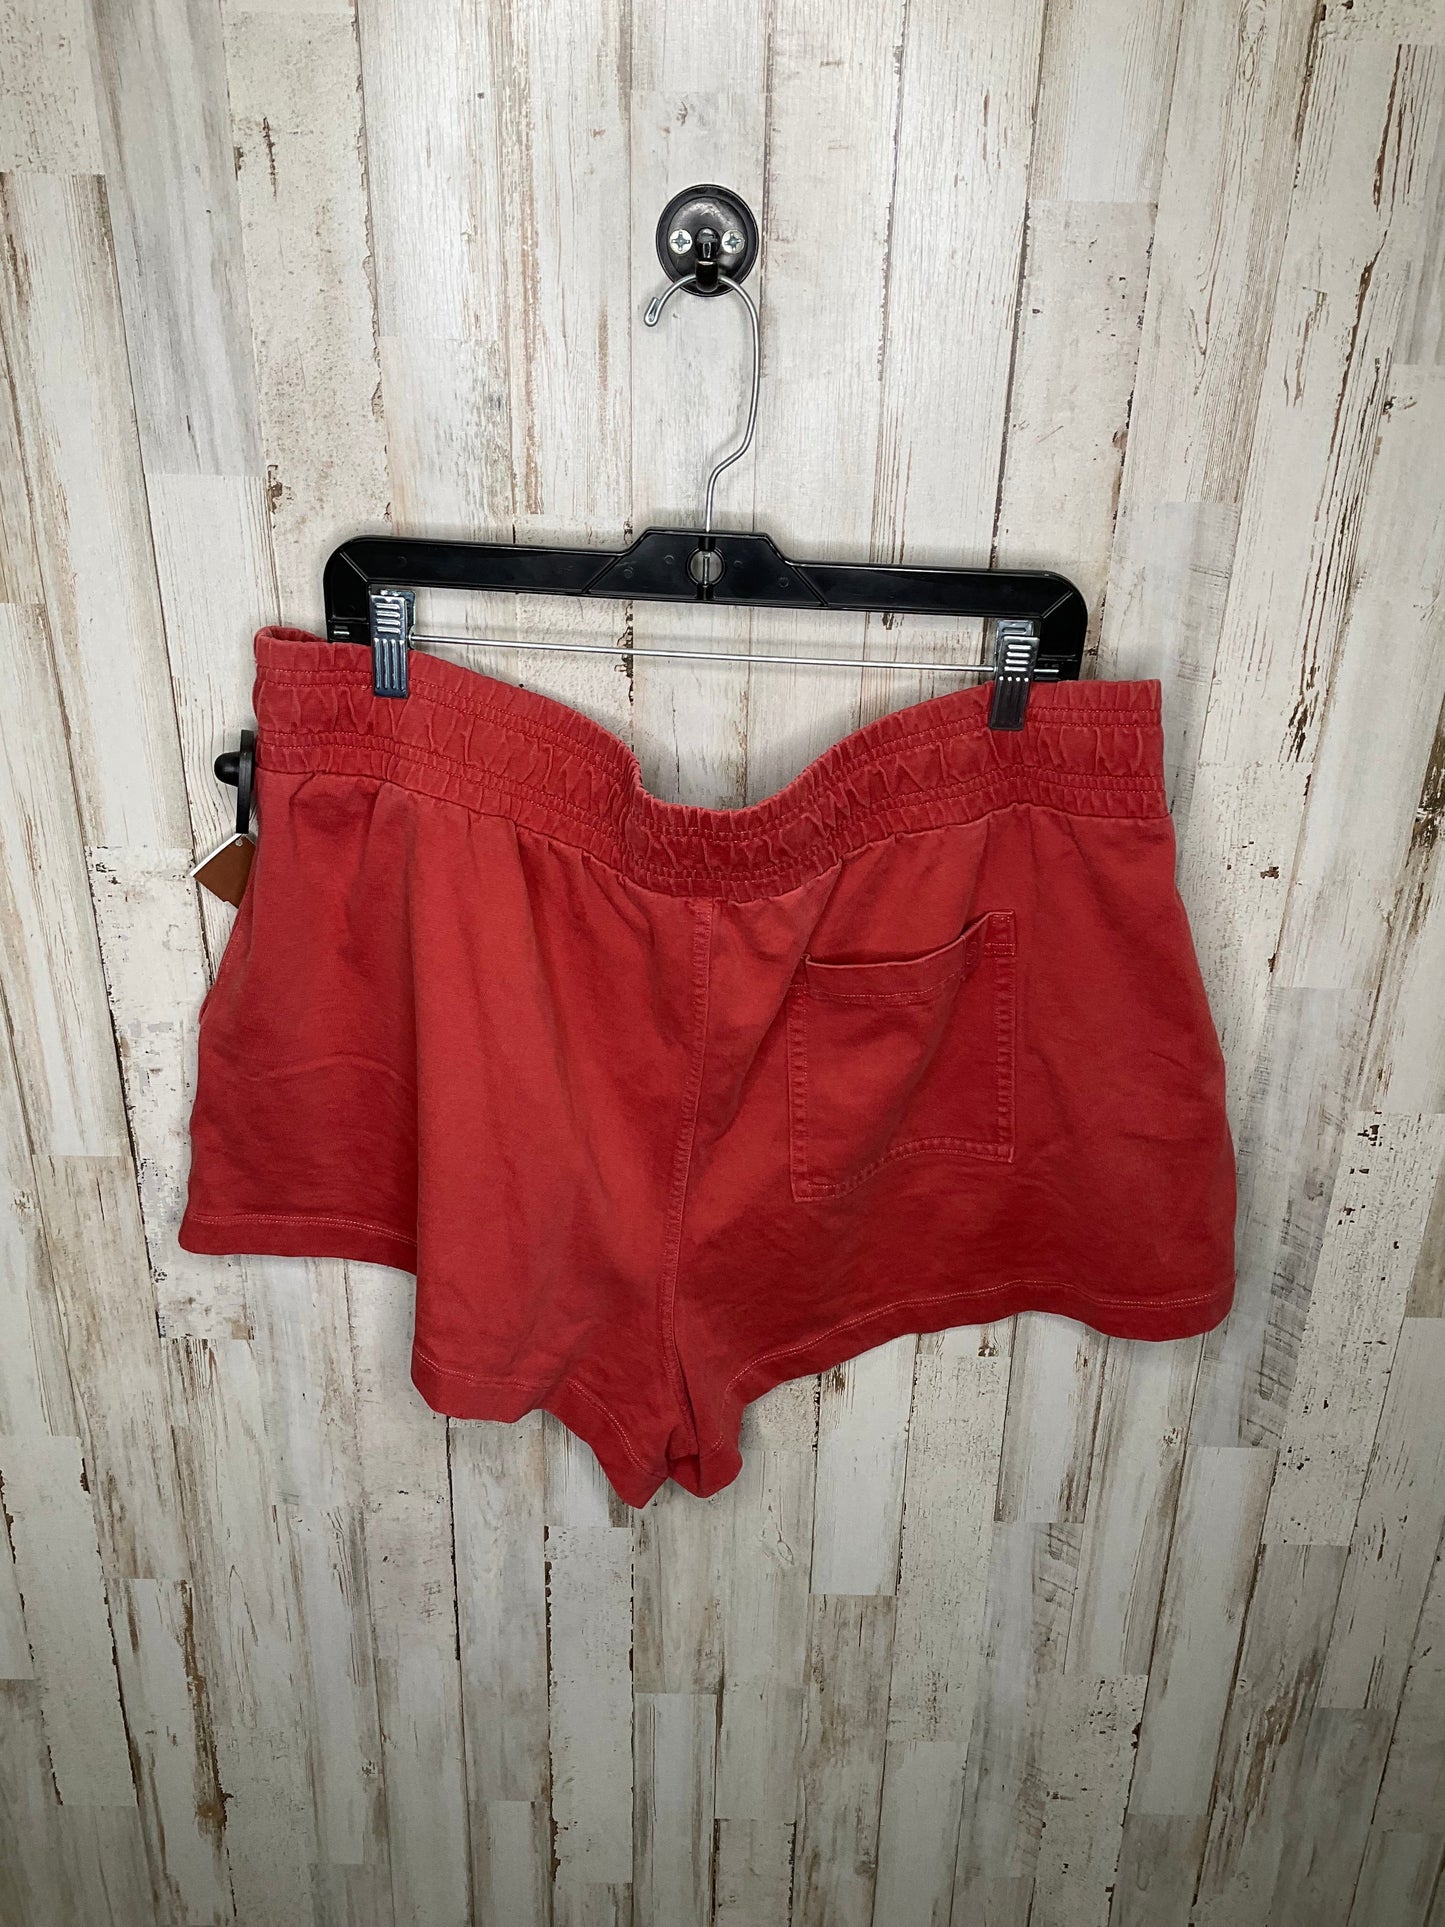 Shorts By Calia  Size: Xxl